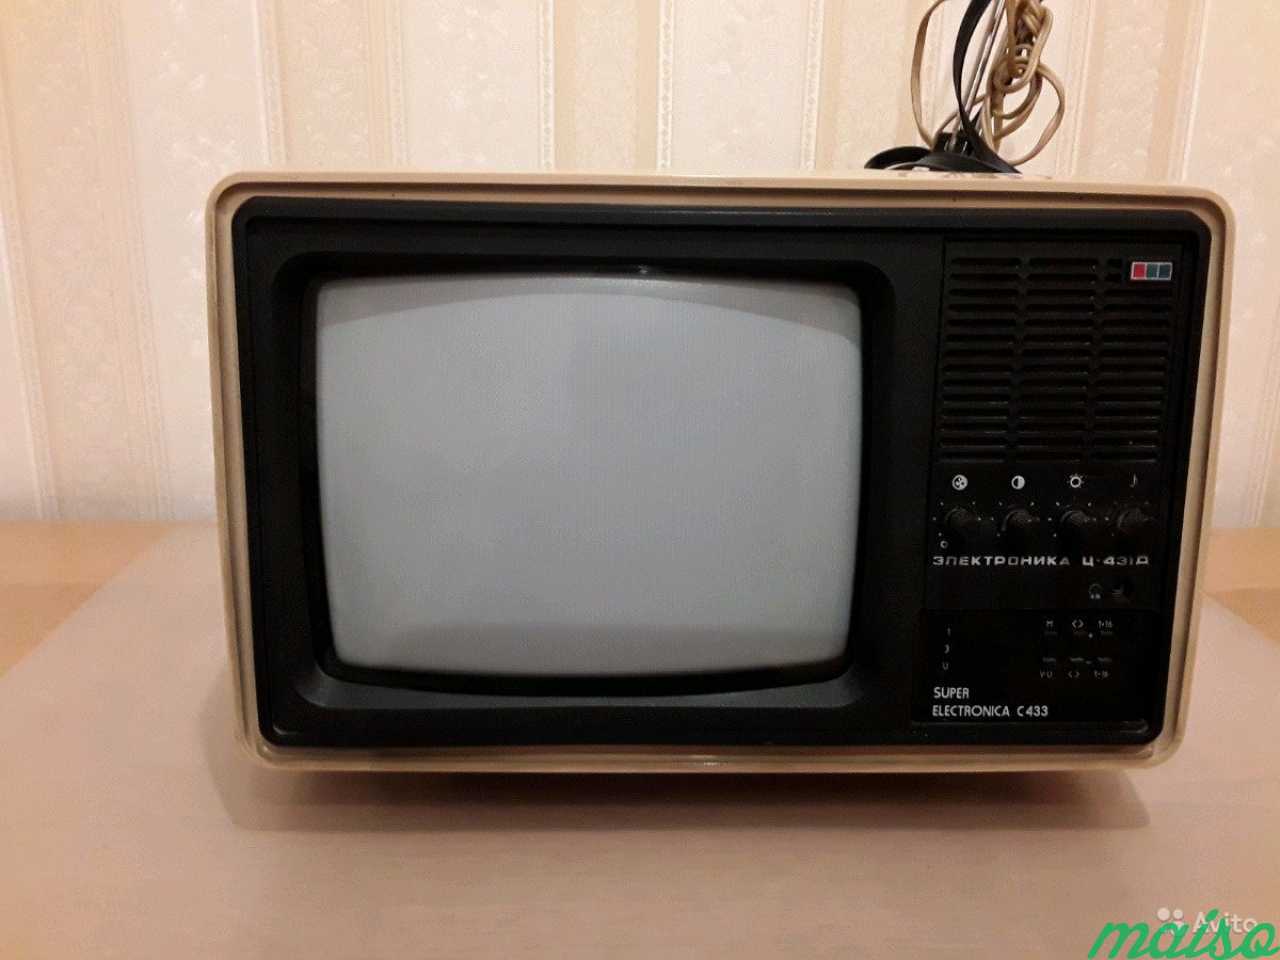 Телевизор цветной переносной Электроника Ц-431 Д 1 в Санкт-Петербурге. Фото 1